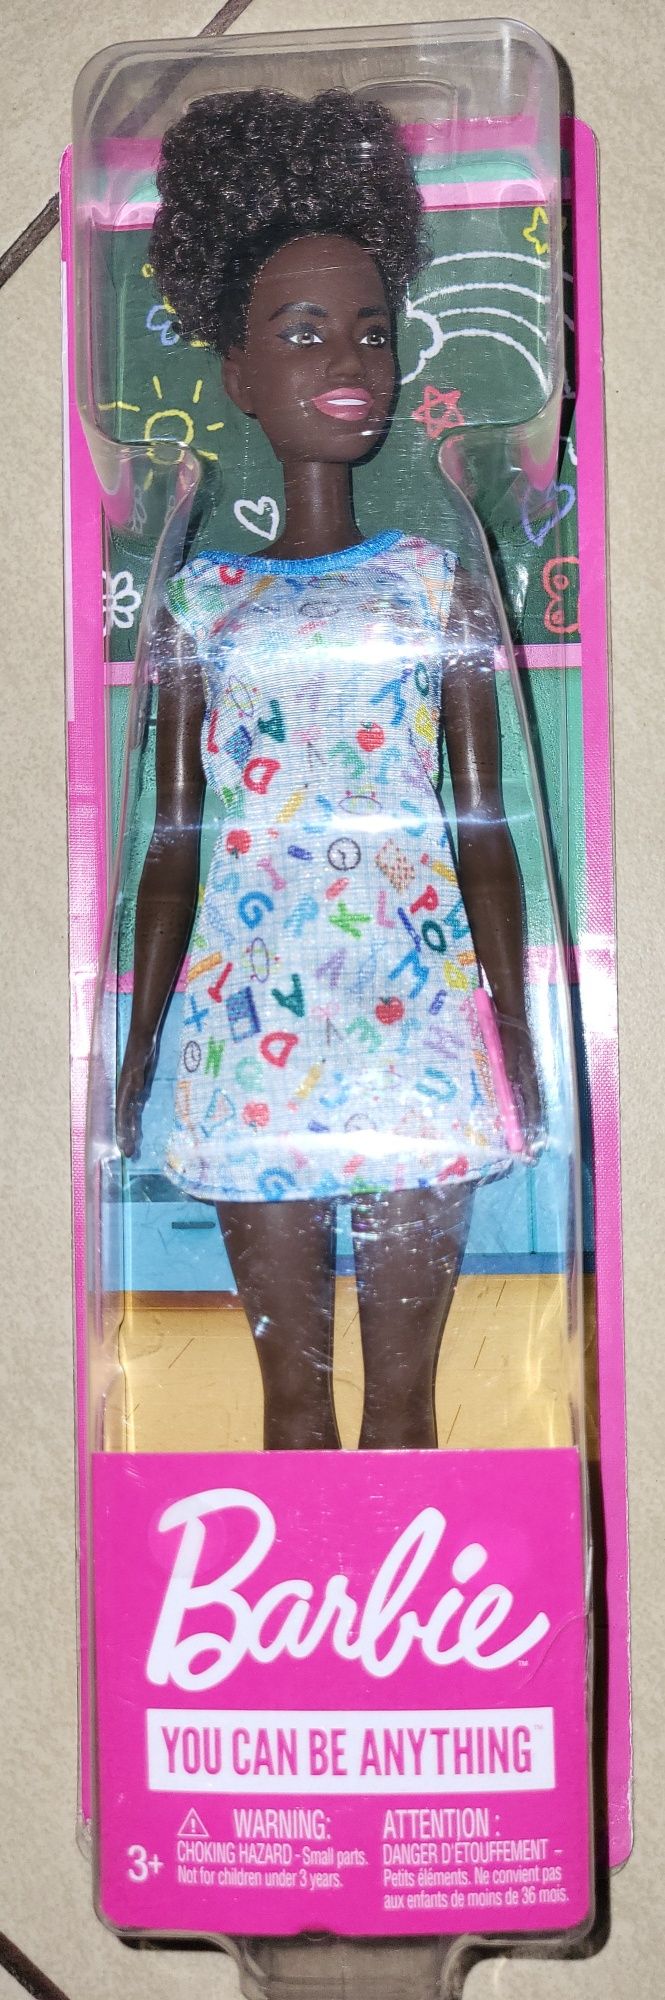 Lalka Barbie Nauczycielka